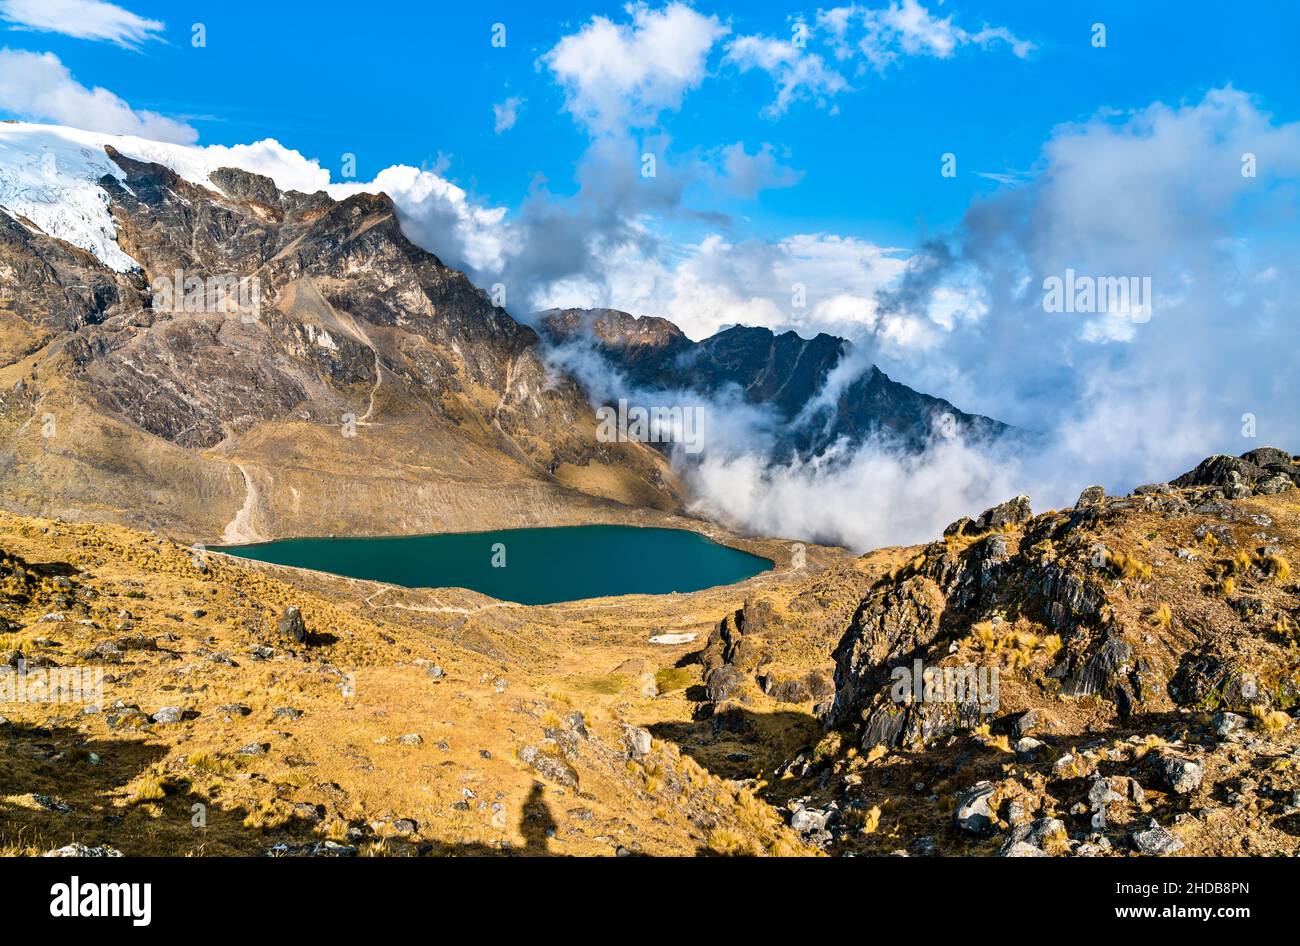 Lago en la cordillera Huaytapallana en Huancayo, Perú Foto de stock